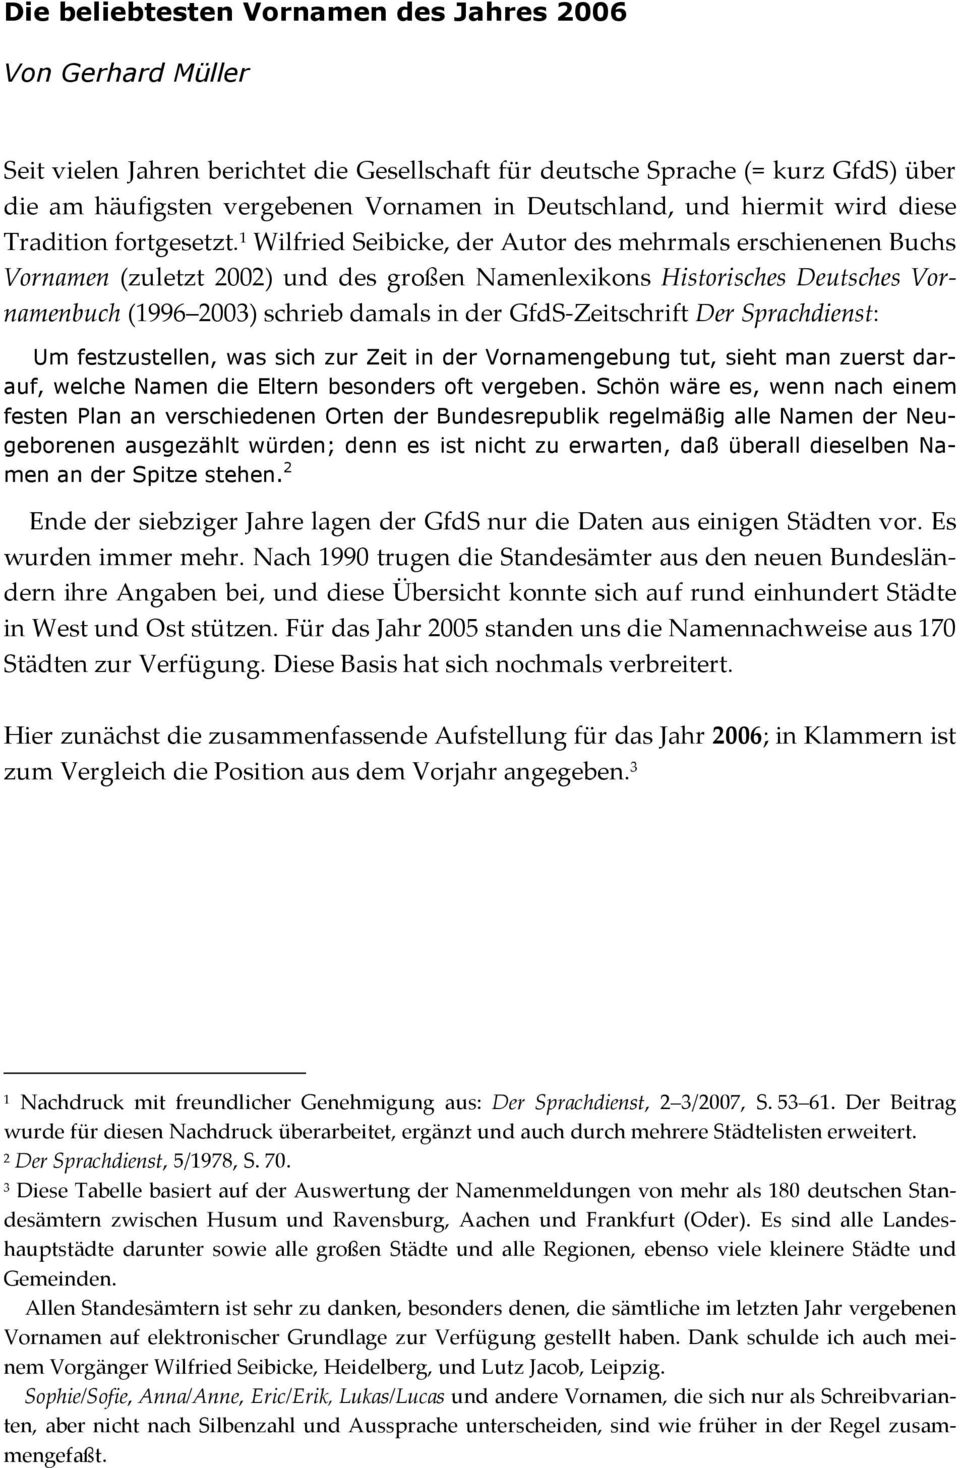 1 Wilfried Seibicke, der Autor des mehrmals erschienenen Buchs Vornamen (zuletzt 2002) und des großen Namenlexikons Historisches Deutsches Vornamenbuch (1996 2003) schrieb damals in der